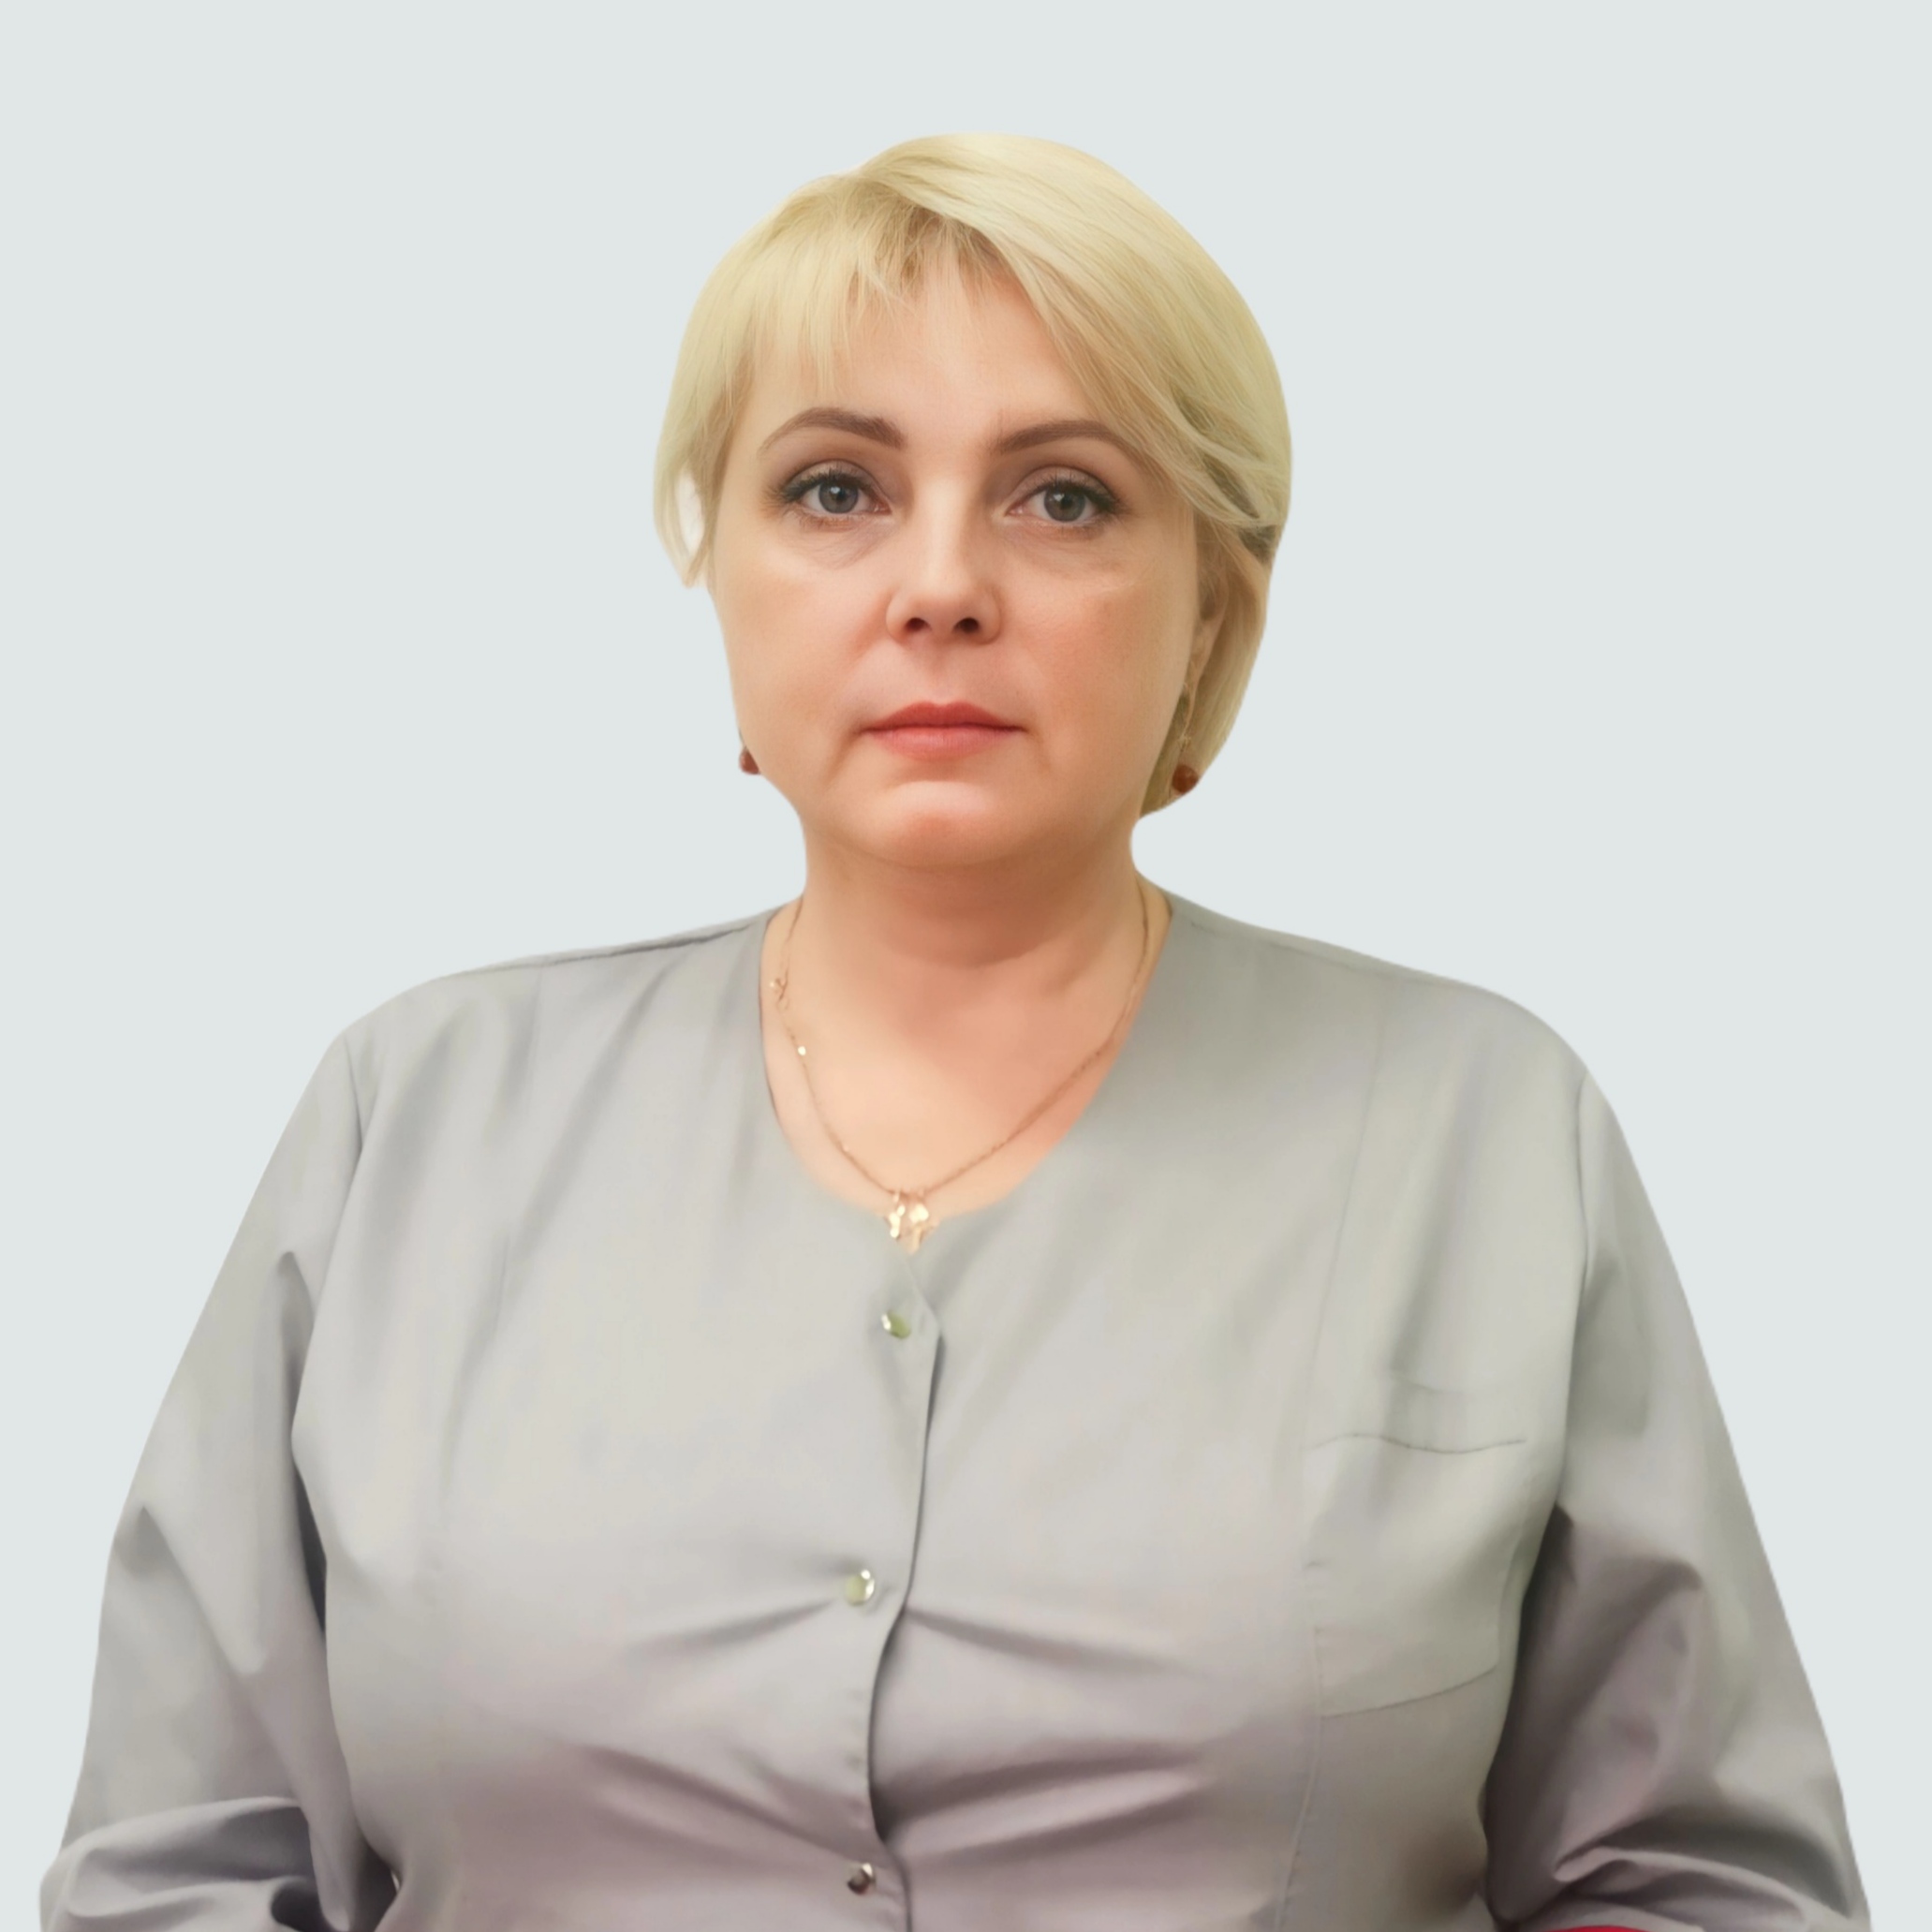 Скачкова Юлия Александровна